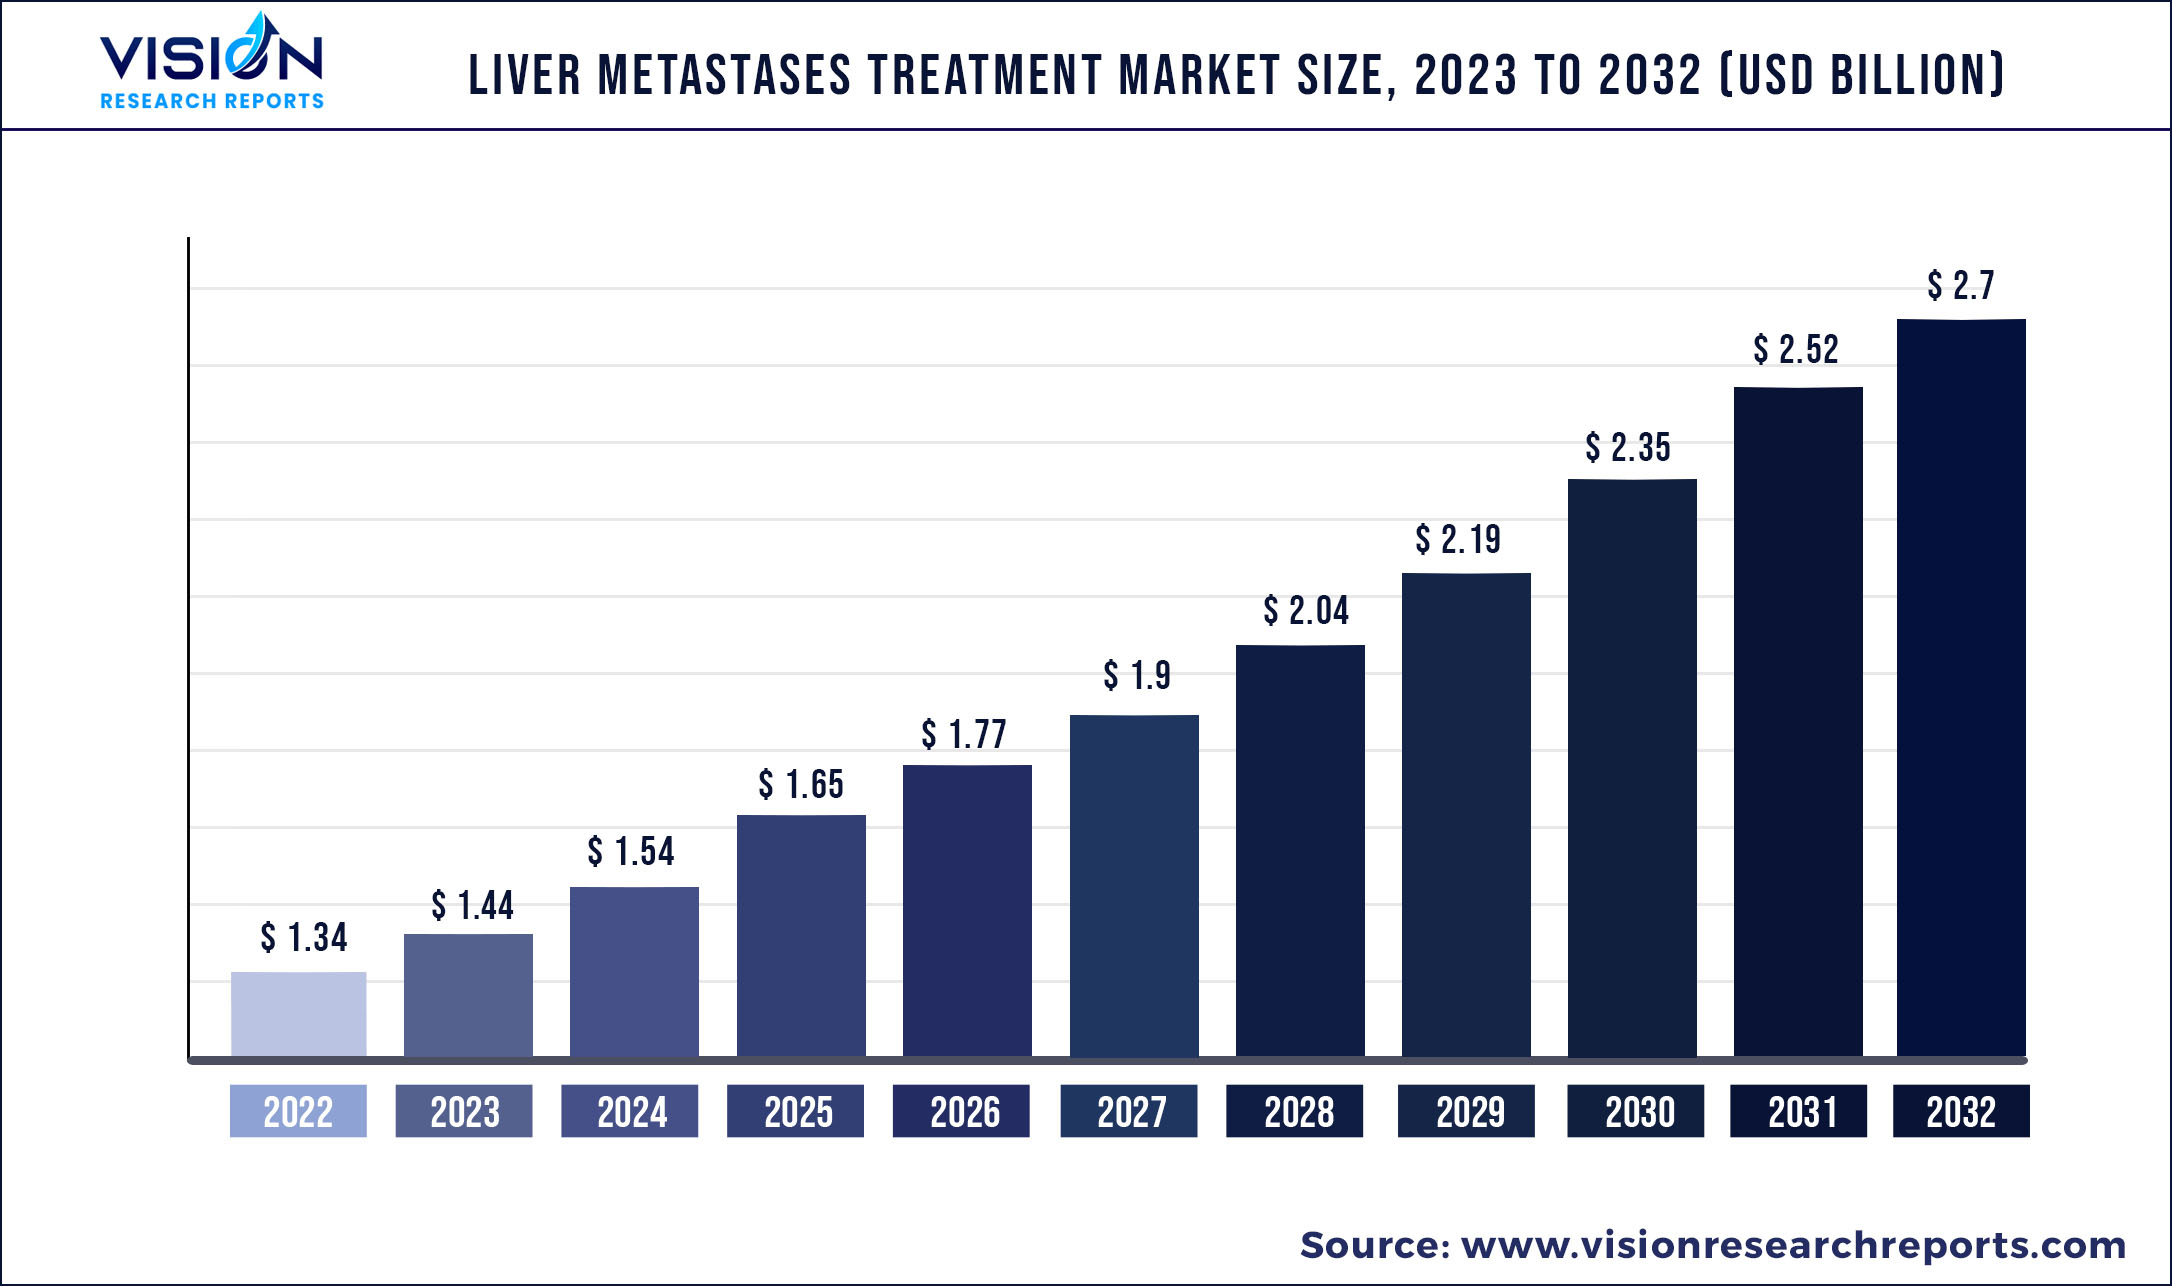 Liver Metastases Treatment Market Size 2023 to 2032